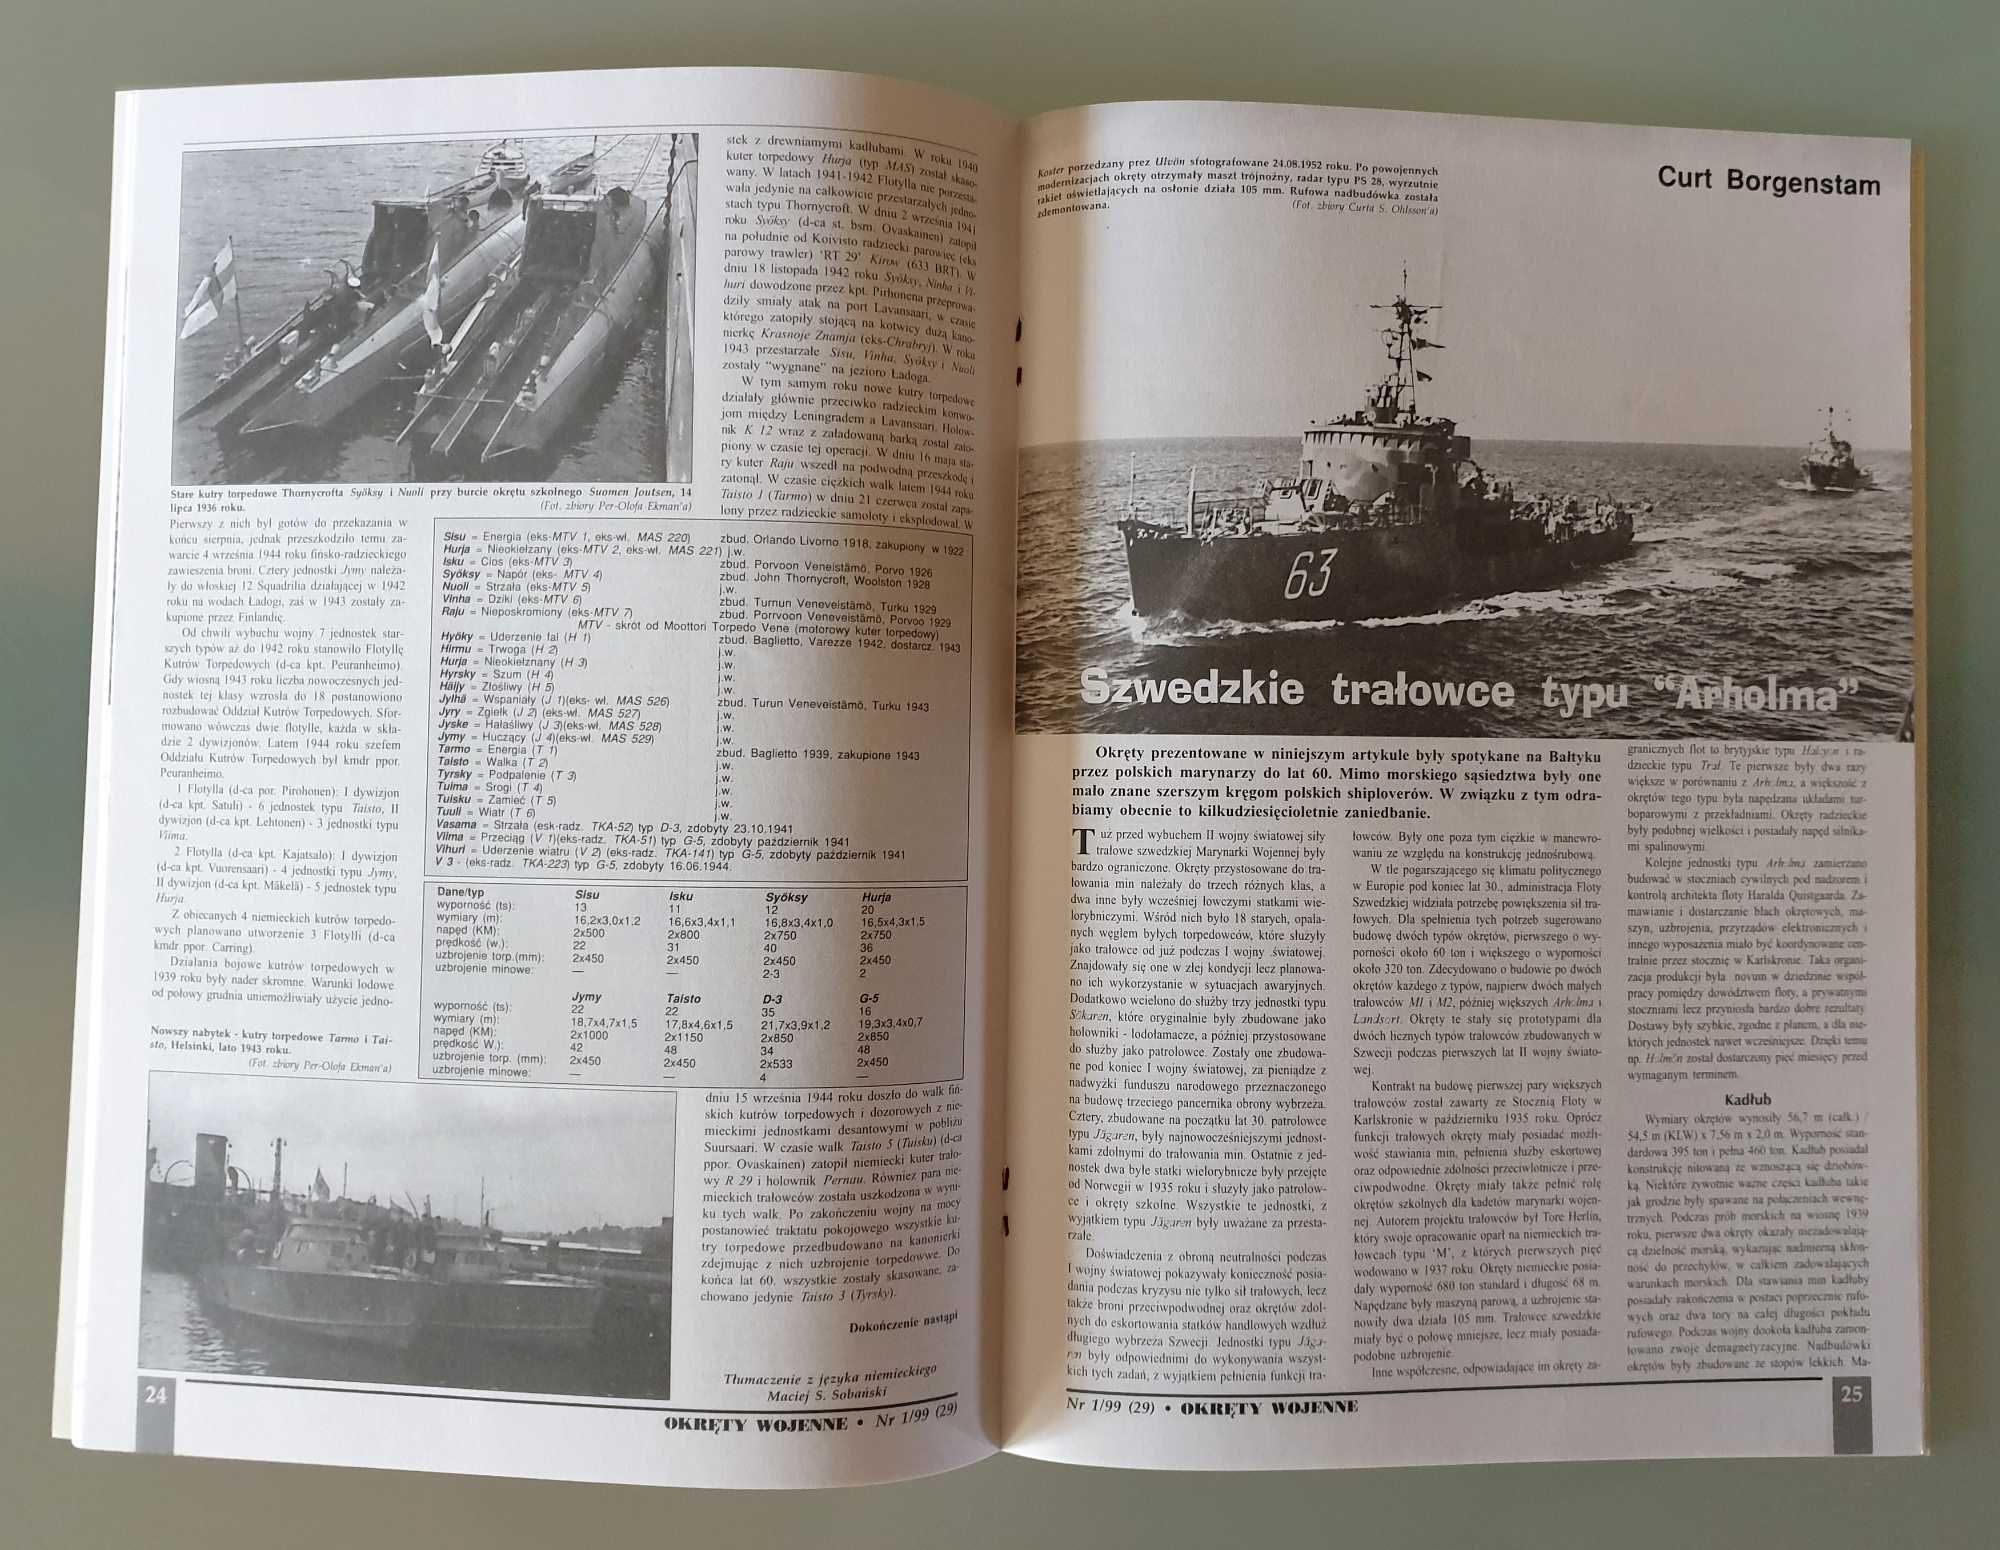 Magazyn "Okręty Wojenne" nr 6 (28) z roku 1998 i 1 (29) z roku 1999